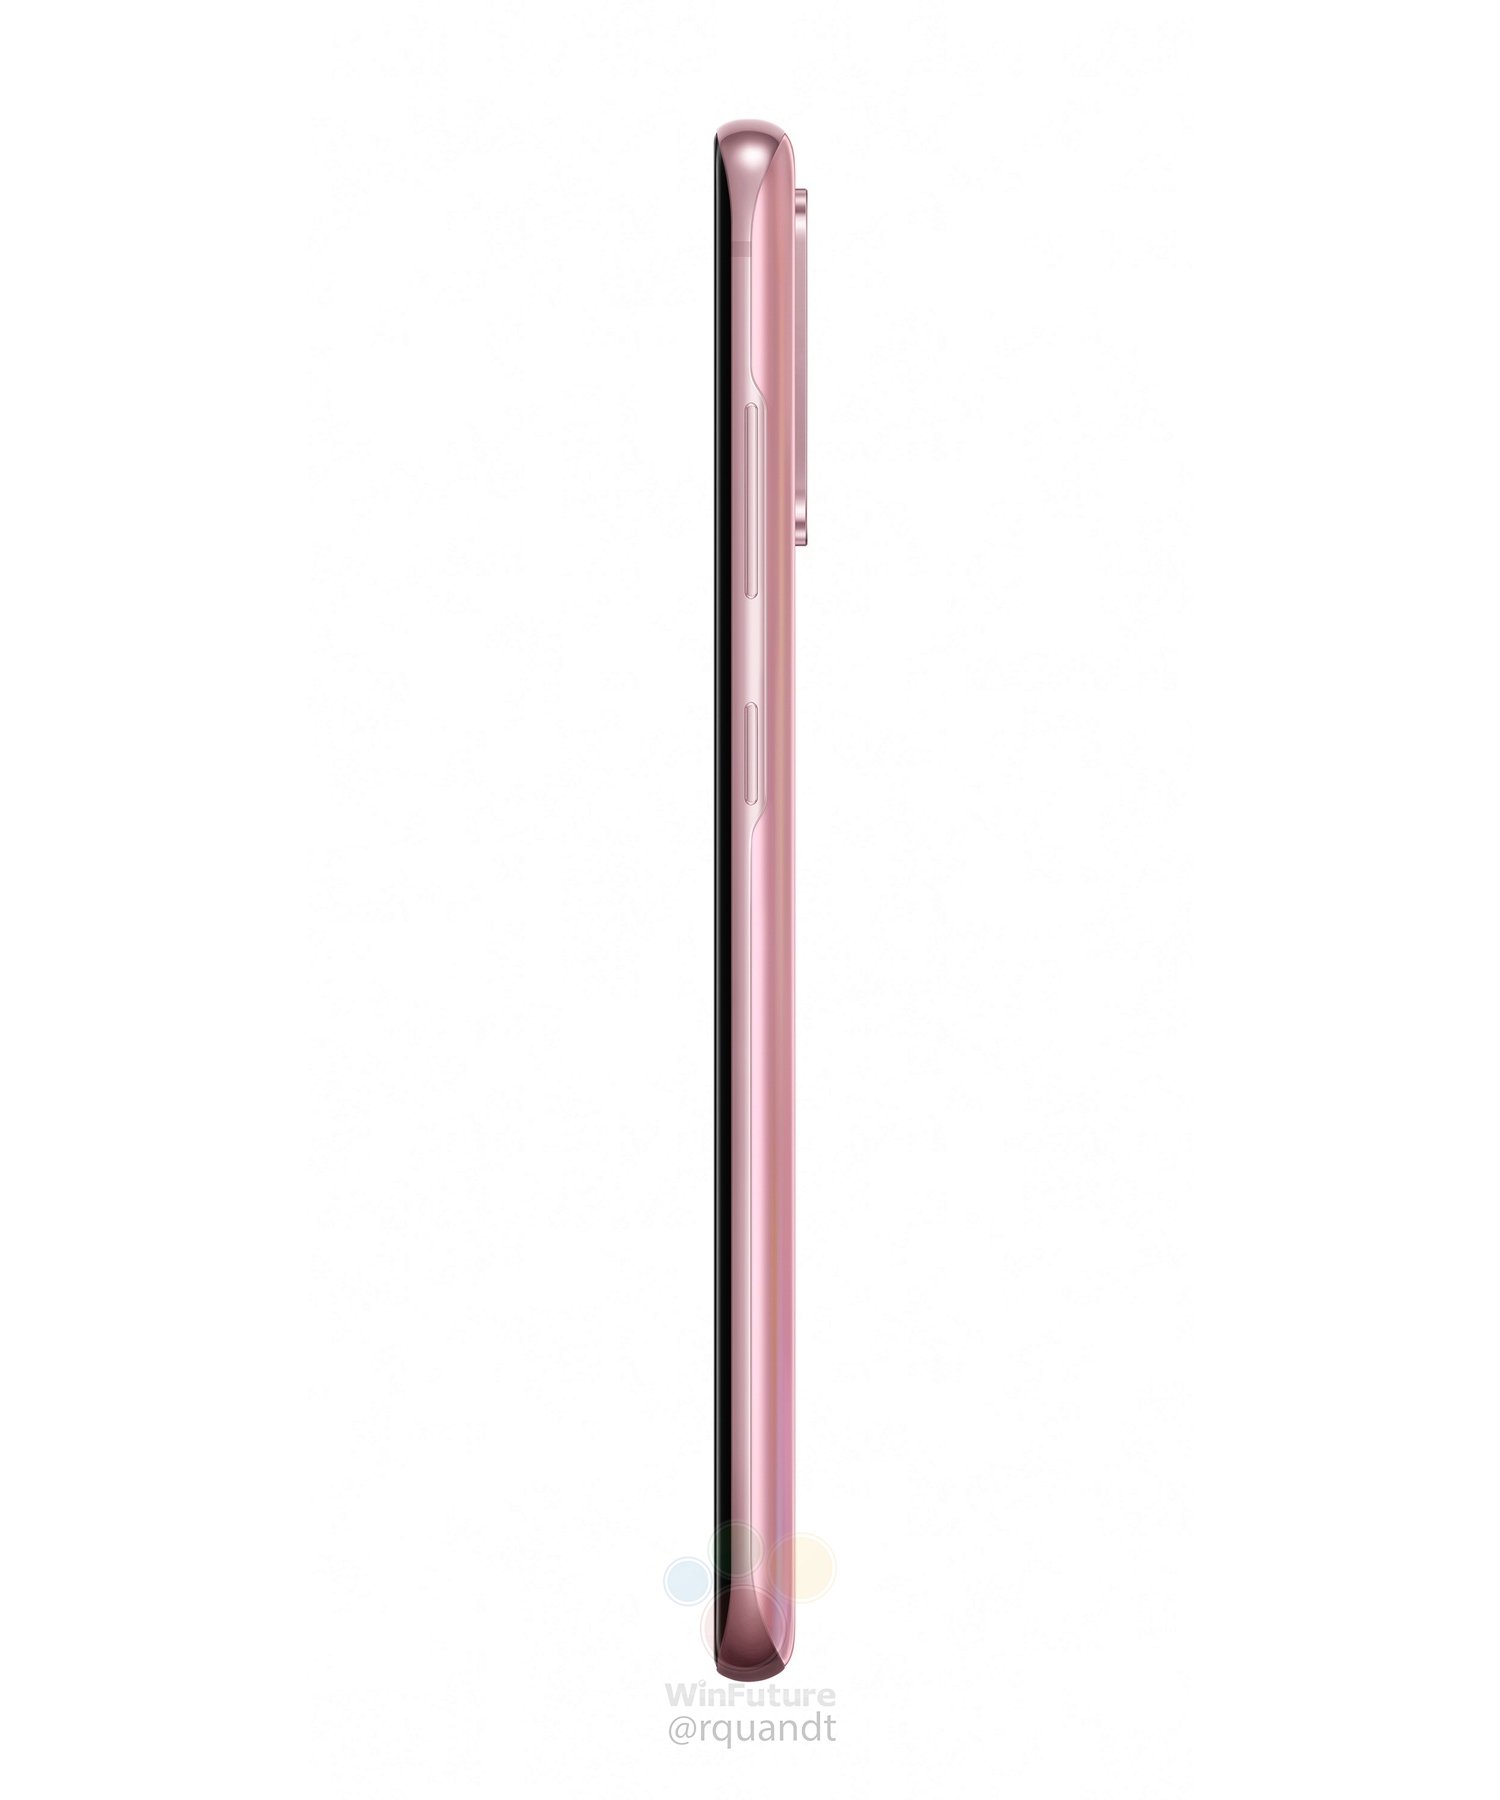 różowy Galaxy S20 Samsung cena kiedy premiera plotki przecieki wycieki rendery specyfikacja dane techniczne